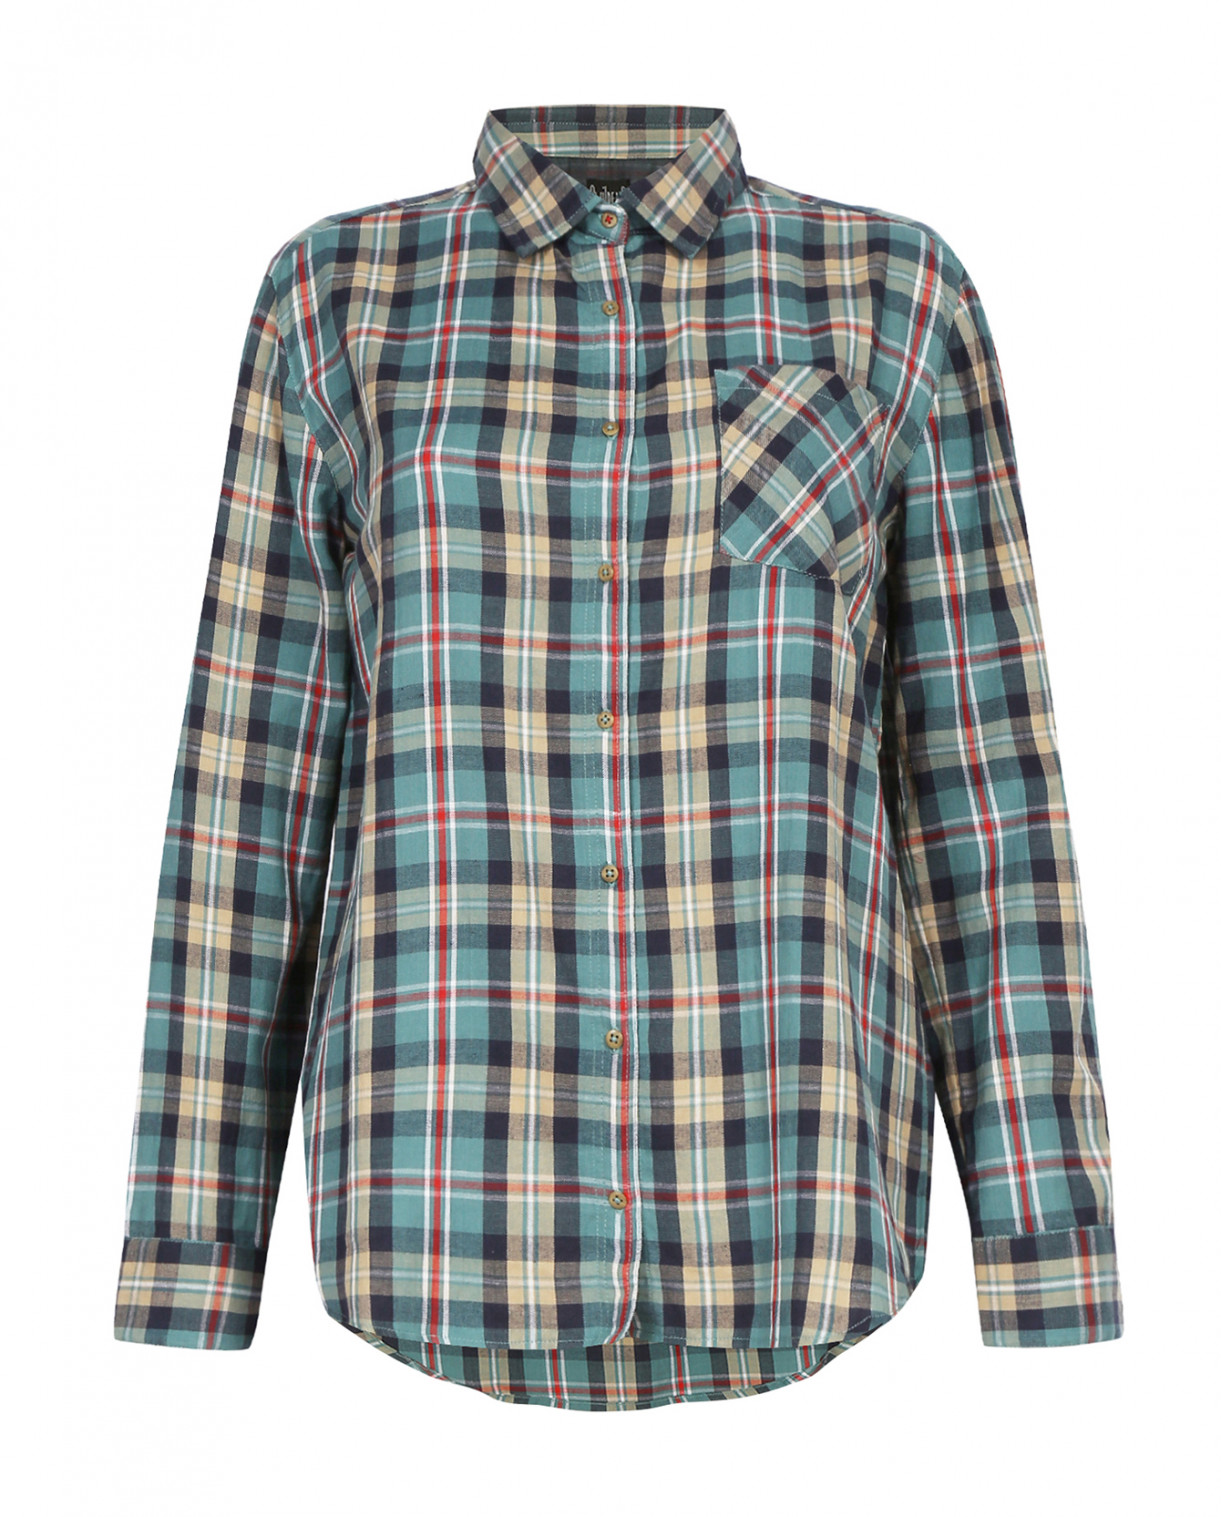 Хлопковая рубашка с узором "клетка" Swildens  –  Общий вид  – Цвет:  Зеленый